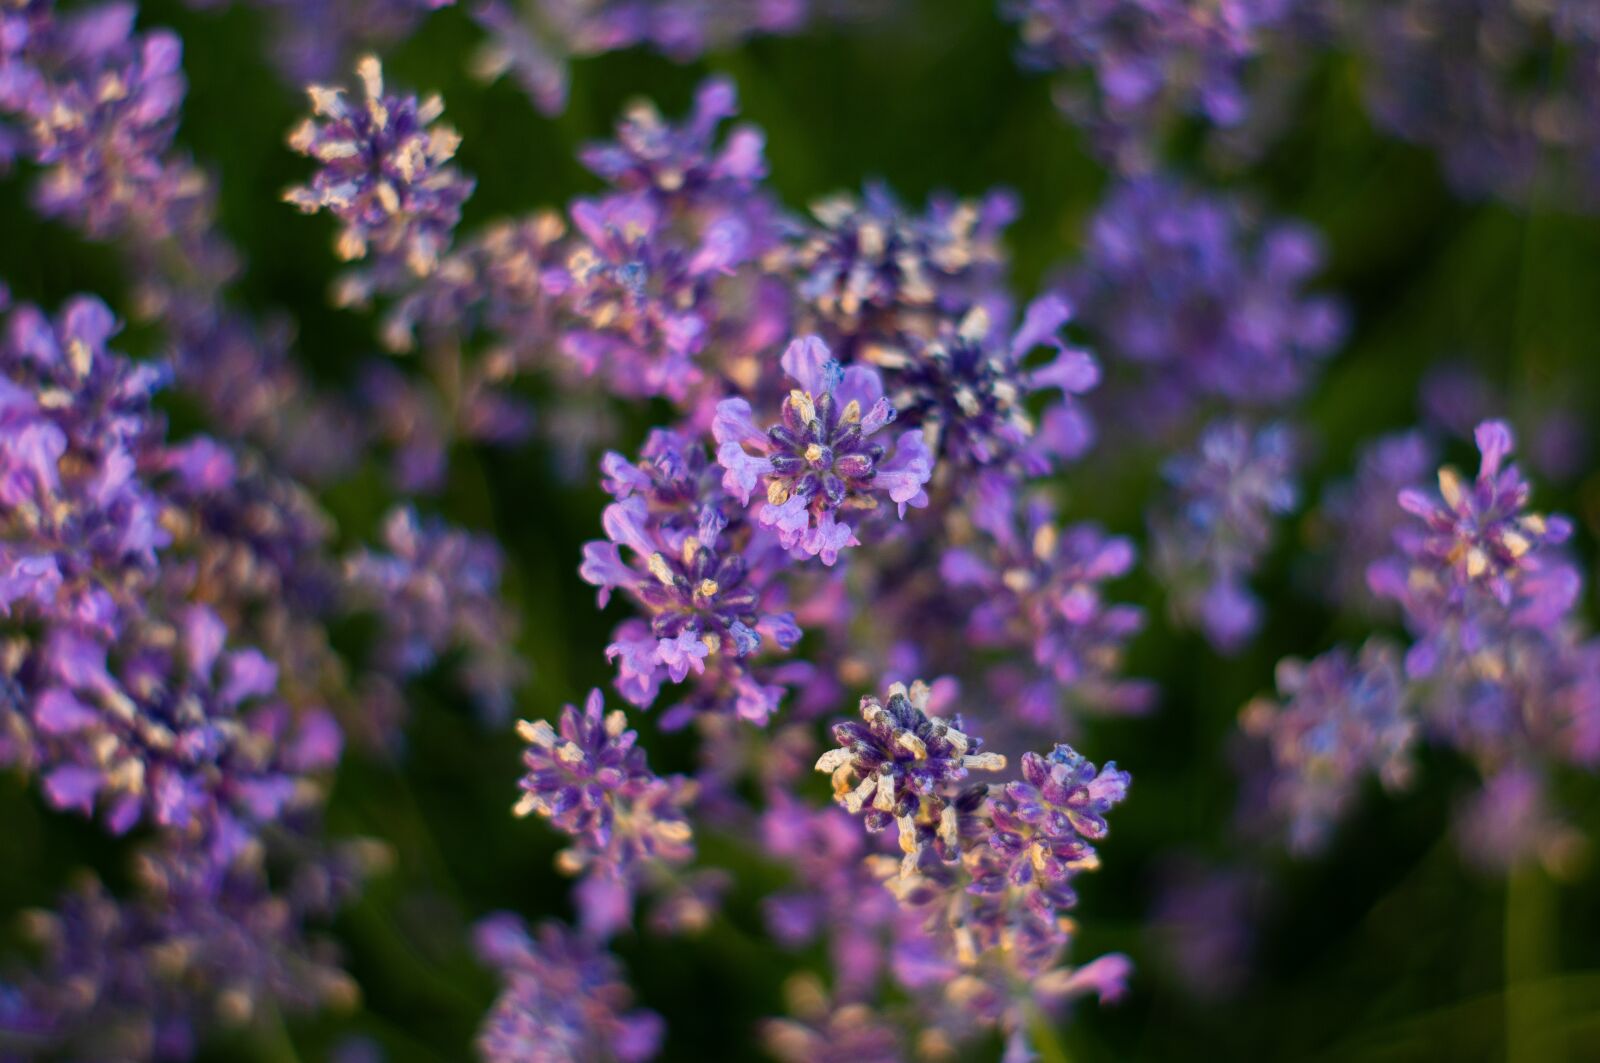 Sony SLT-A57 + Minolta AF 50mm F1.7 sample photo. Lavender, summer, garden photography